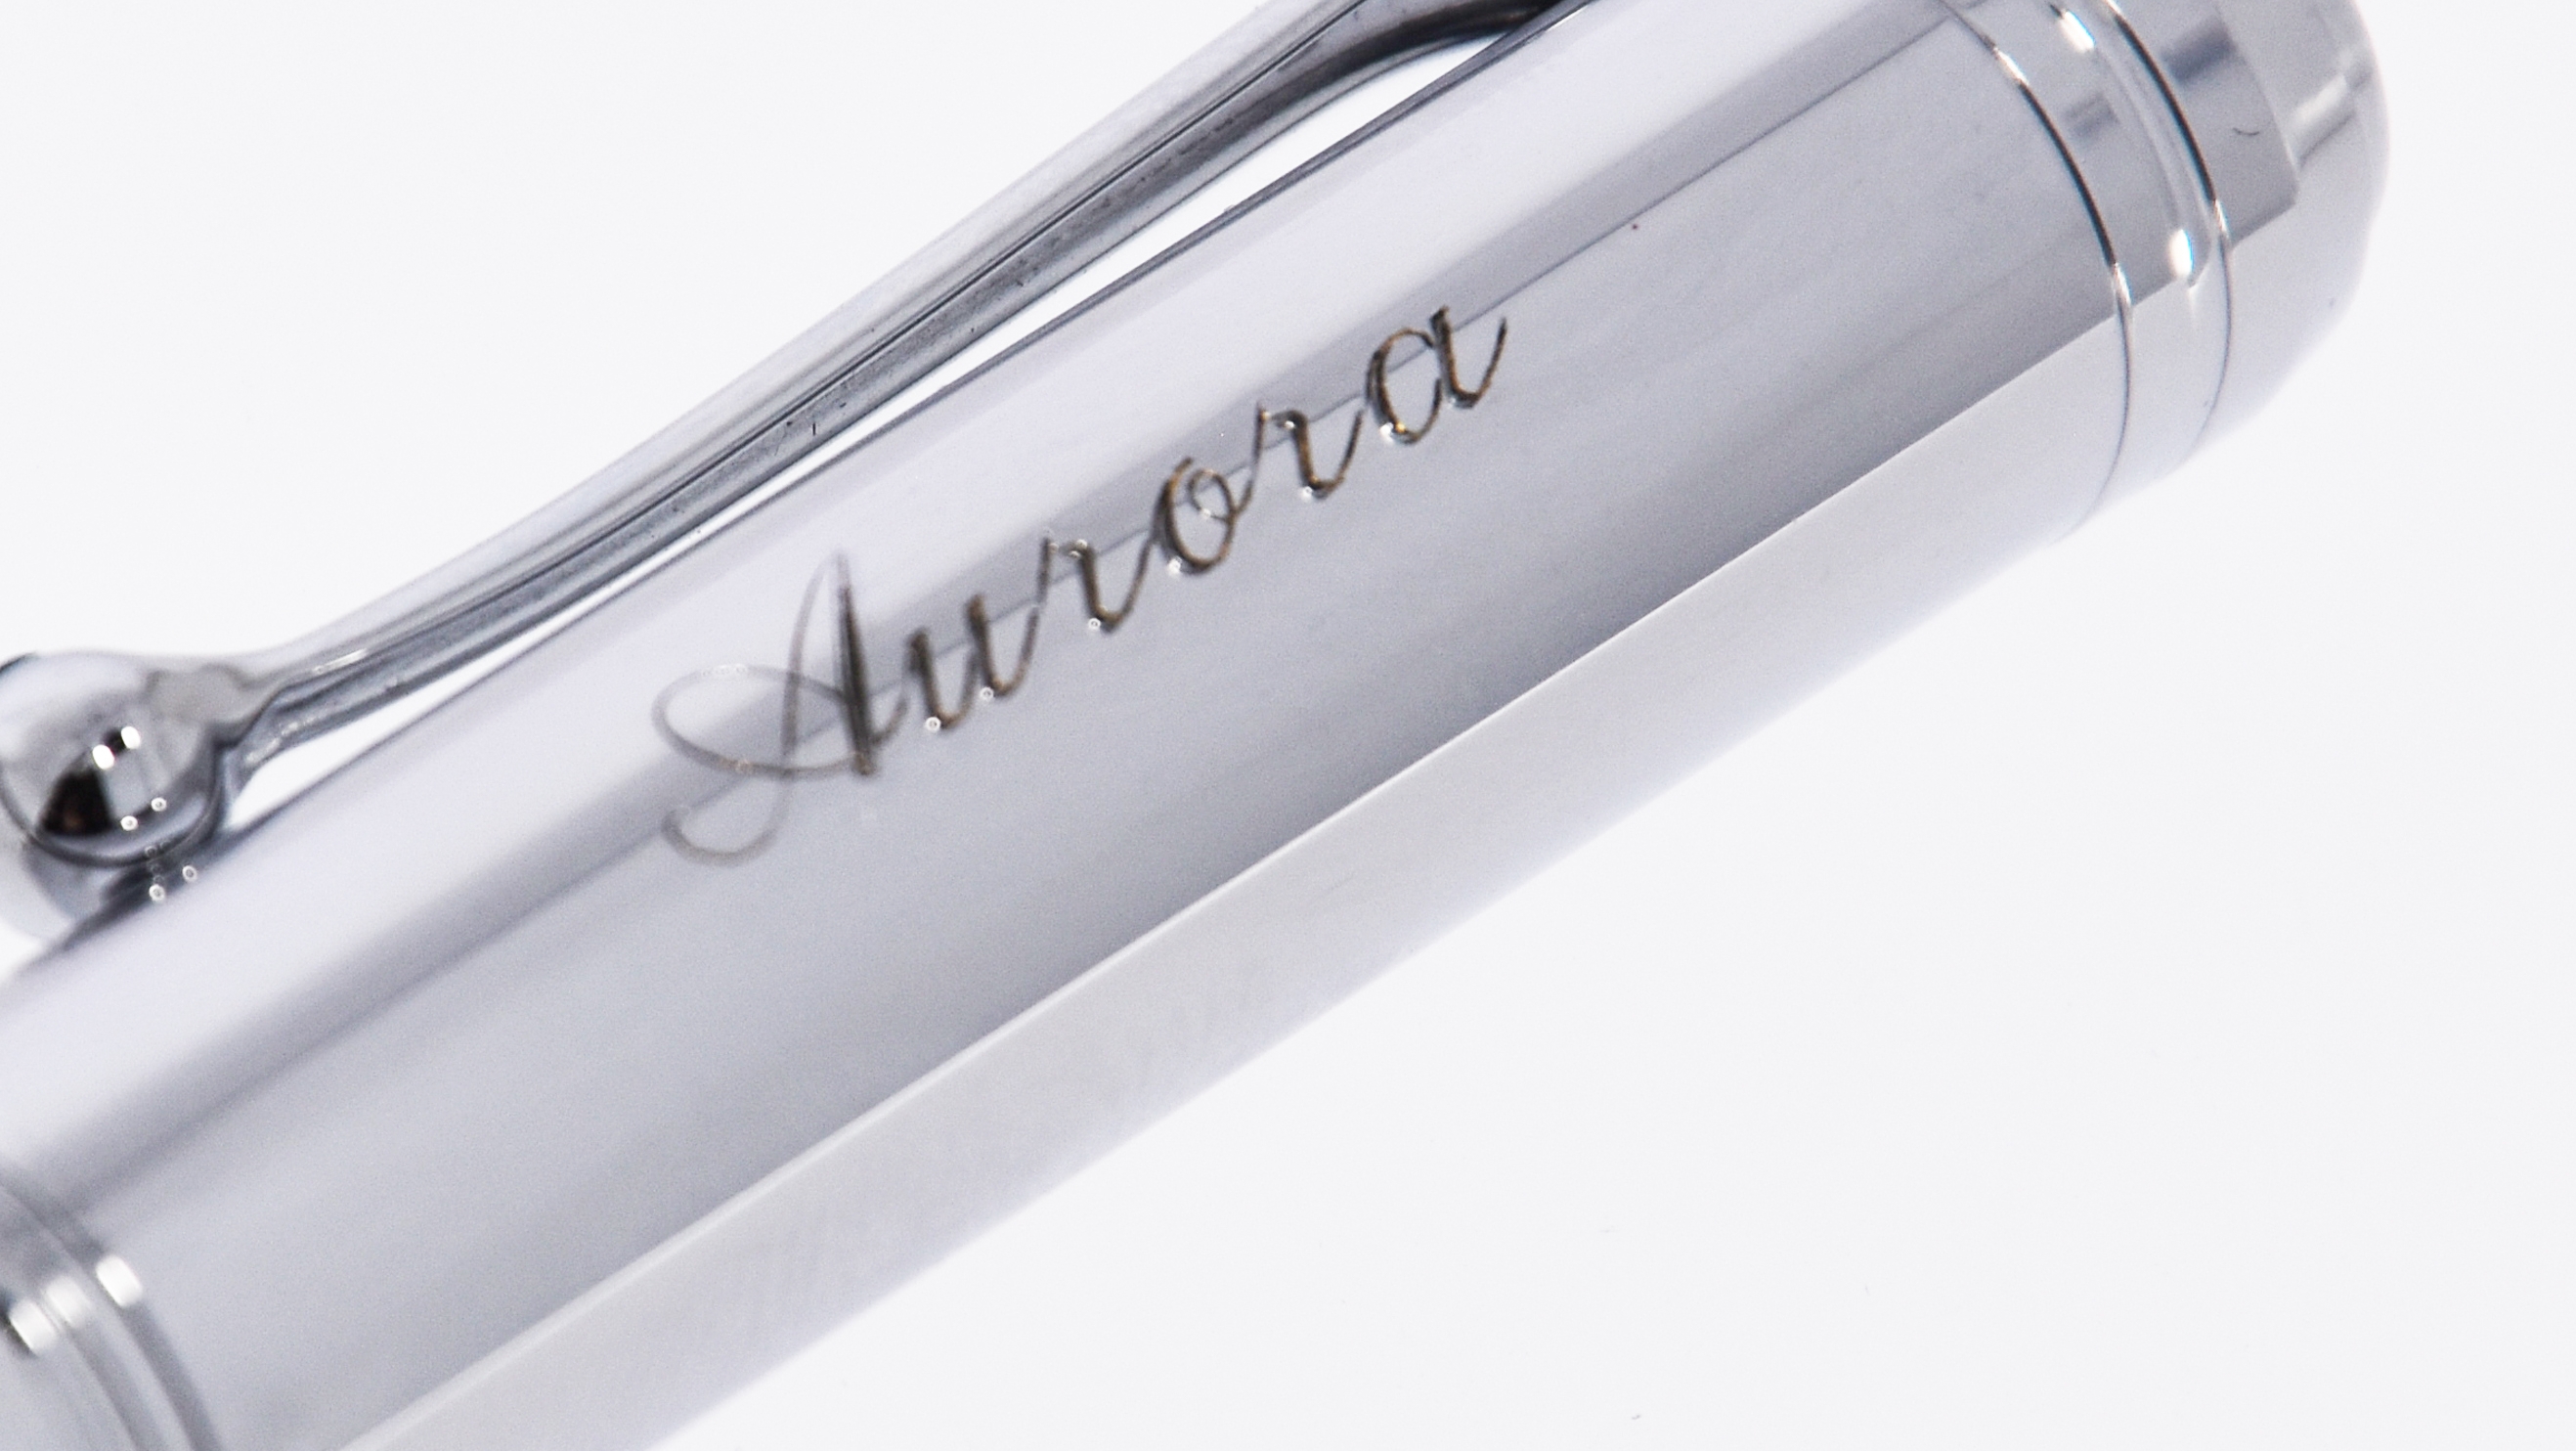 <p>Il nome sul cappuccio delle penne Aurora è un classico, soprattutto per la regalistica legata alle festività e alle ricorrenze</p>
